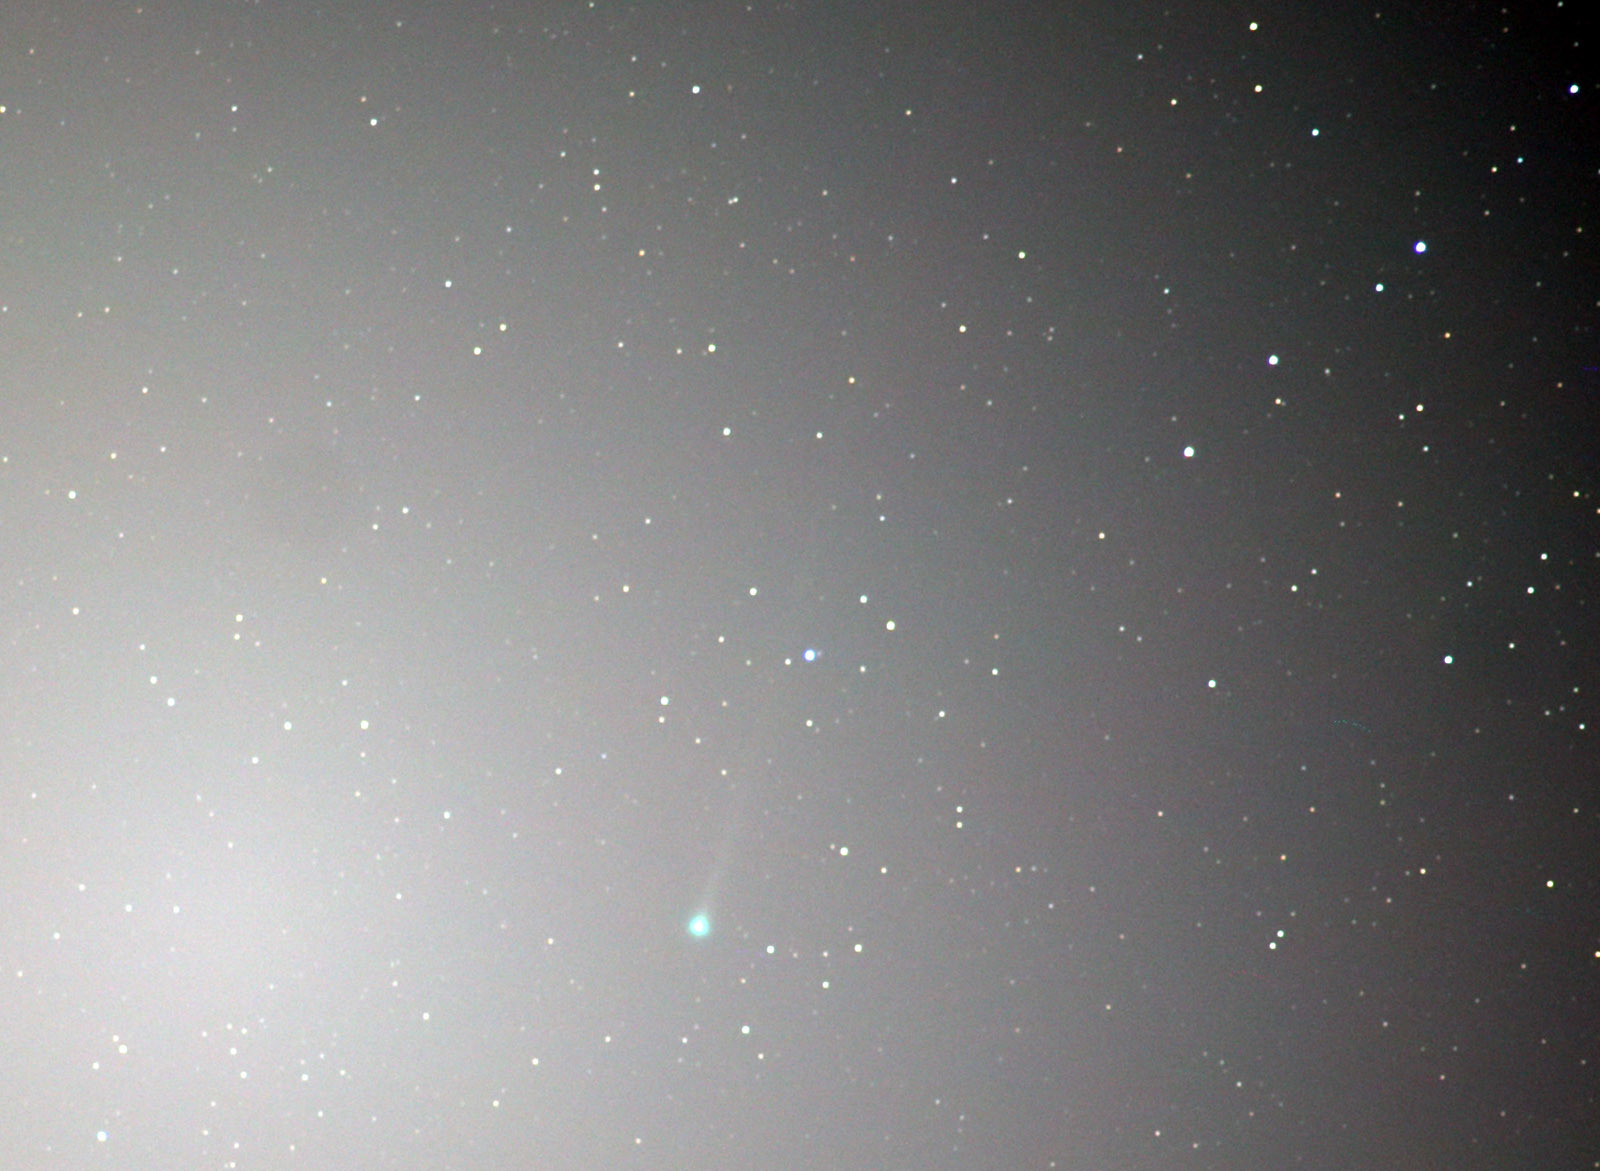 45P/Honda-Mrkos-Pajdusakova彗星_e0174091_22400611.jpg